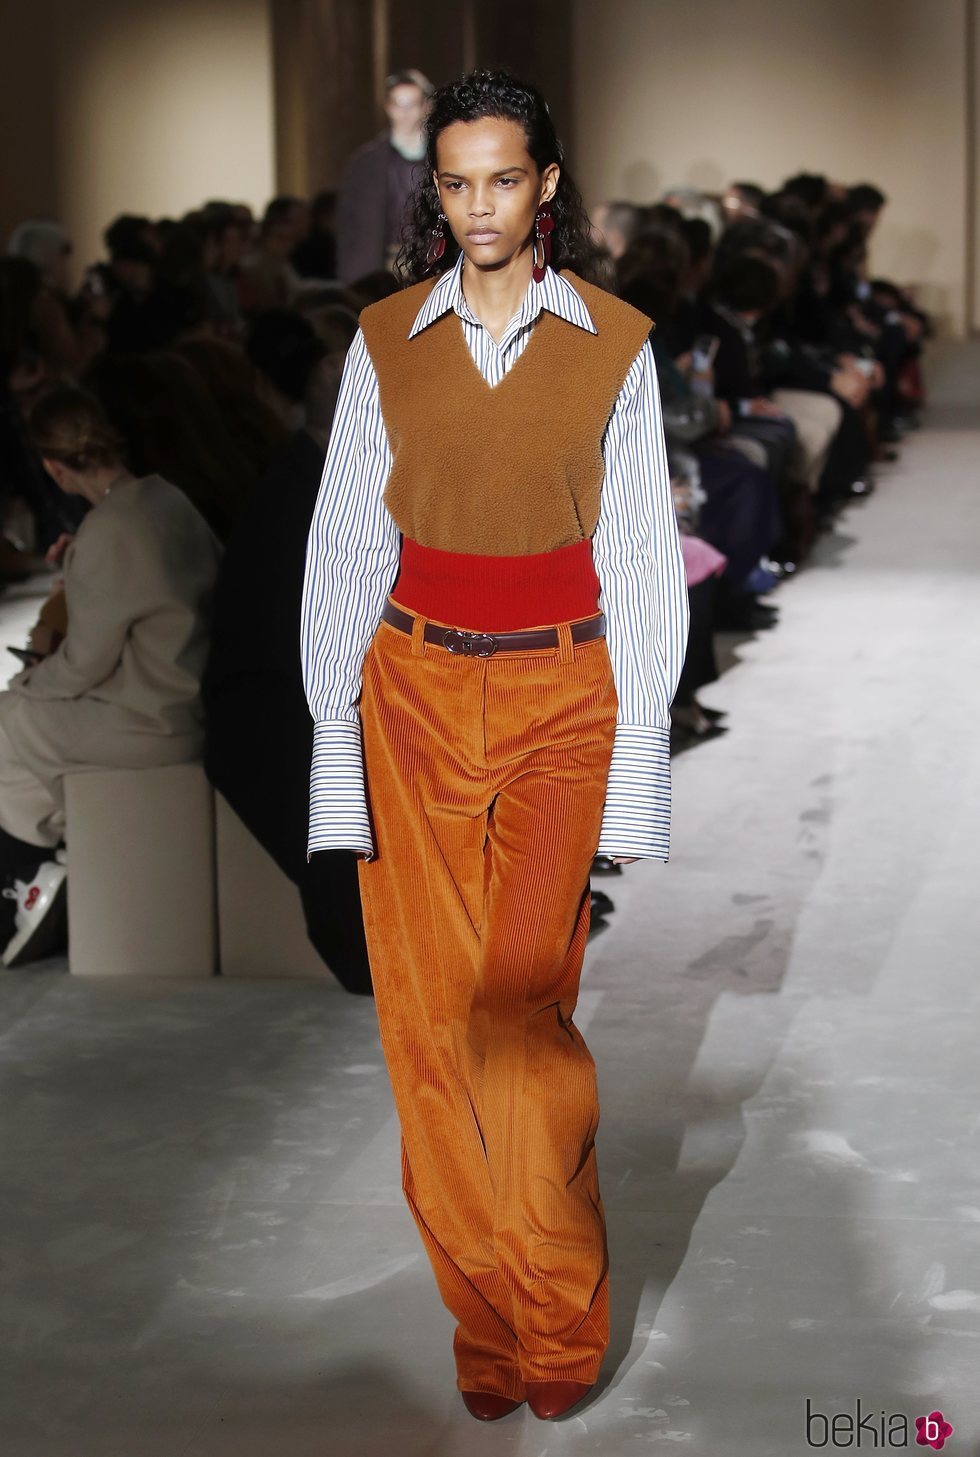 Modelo con un look anaranjado  de Salvatore Ferragamo en la semana de la moda de Milán 2019